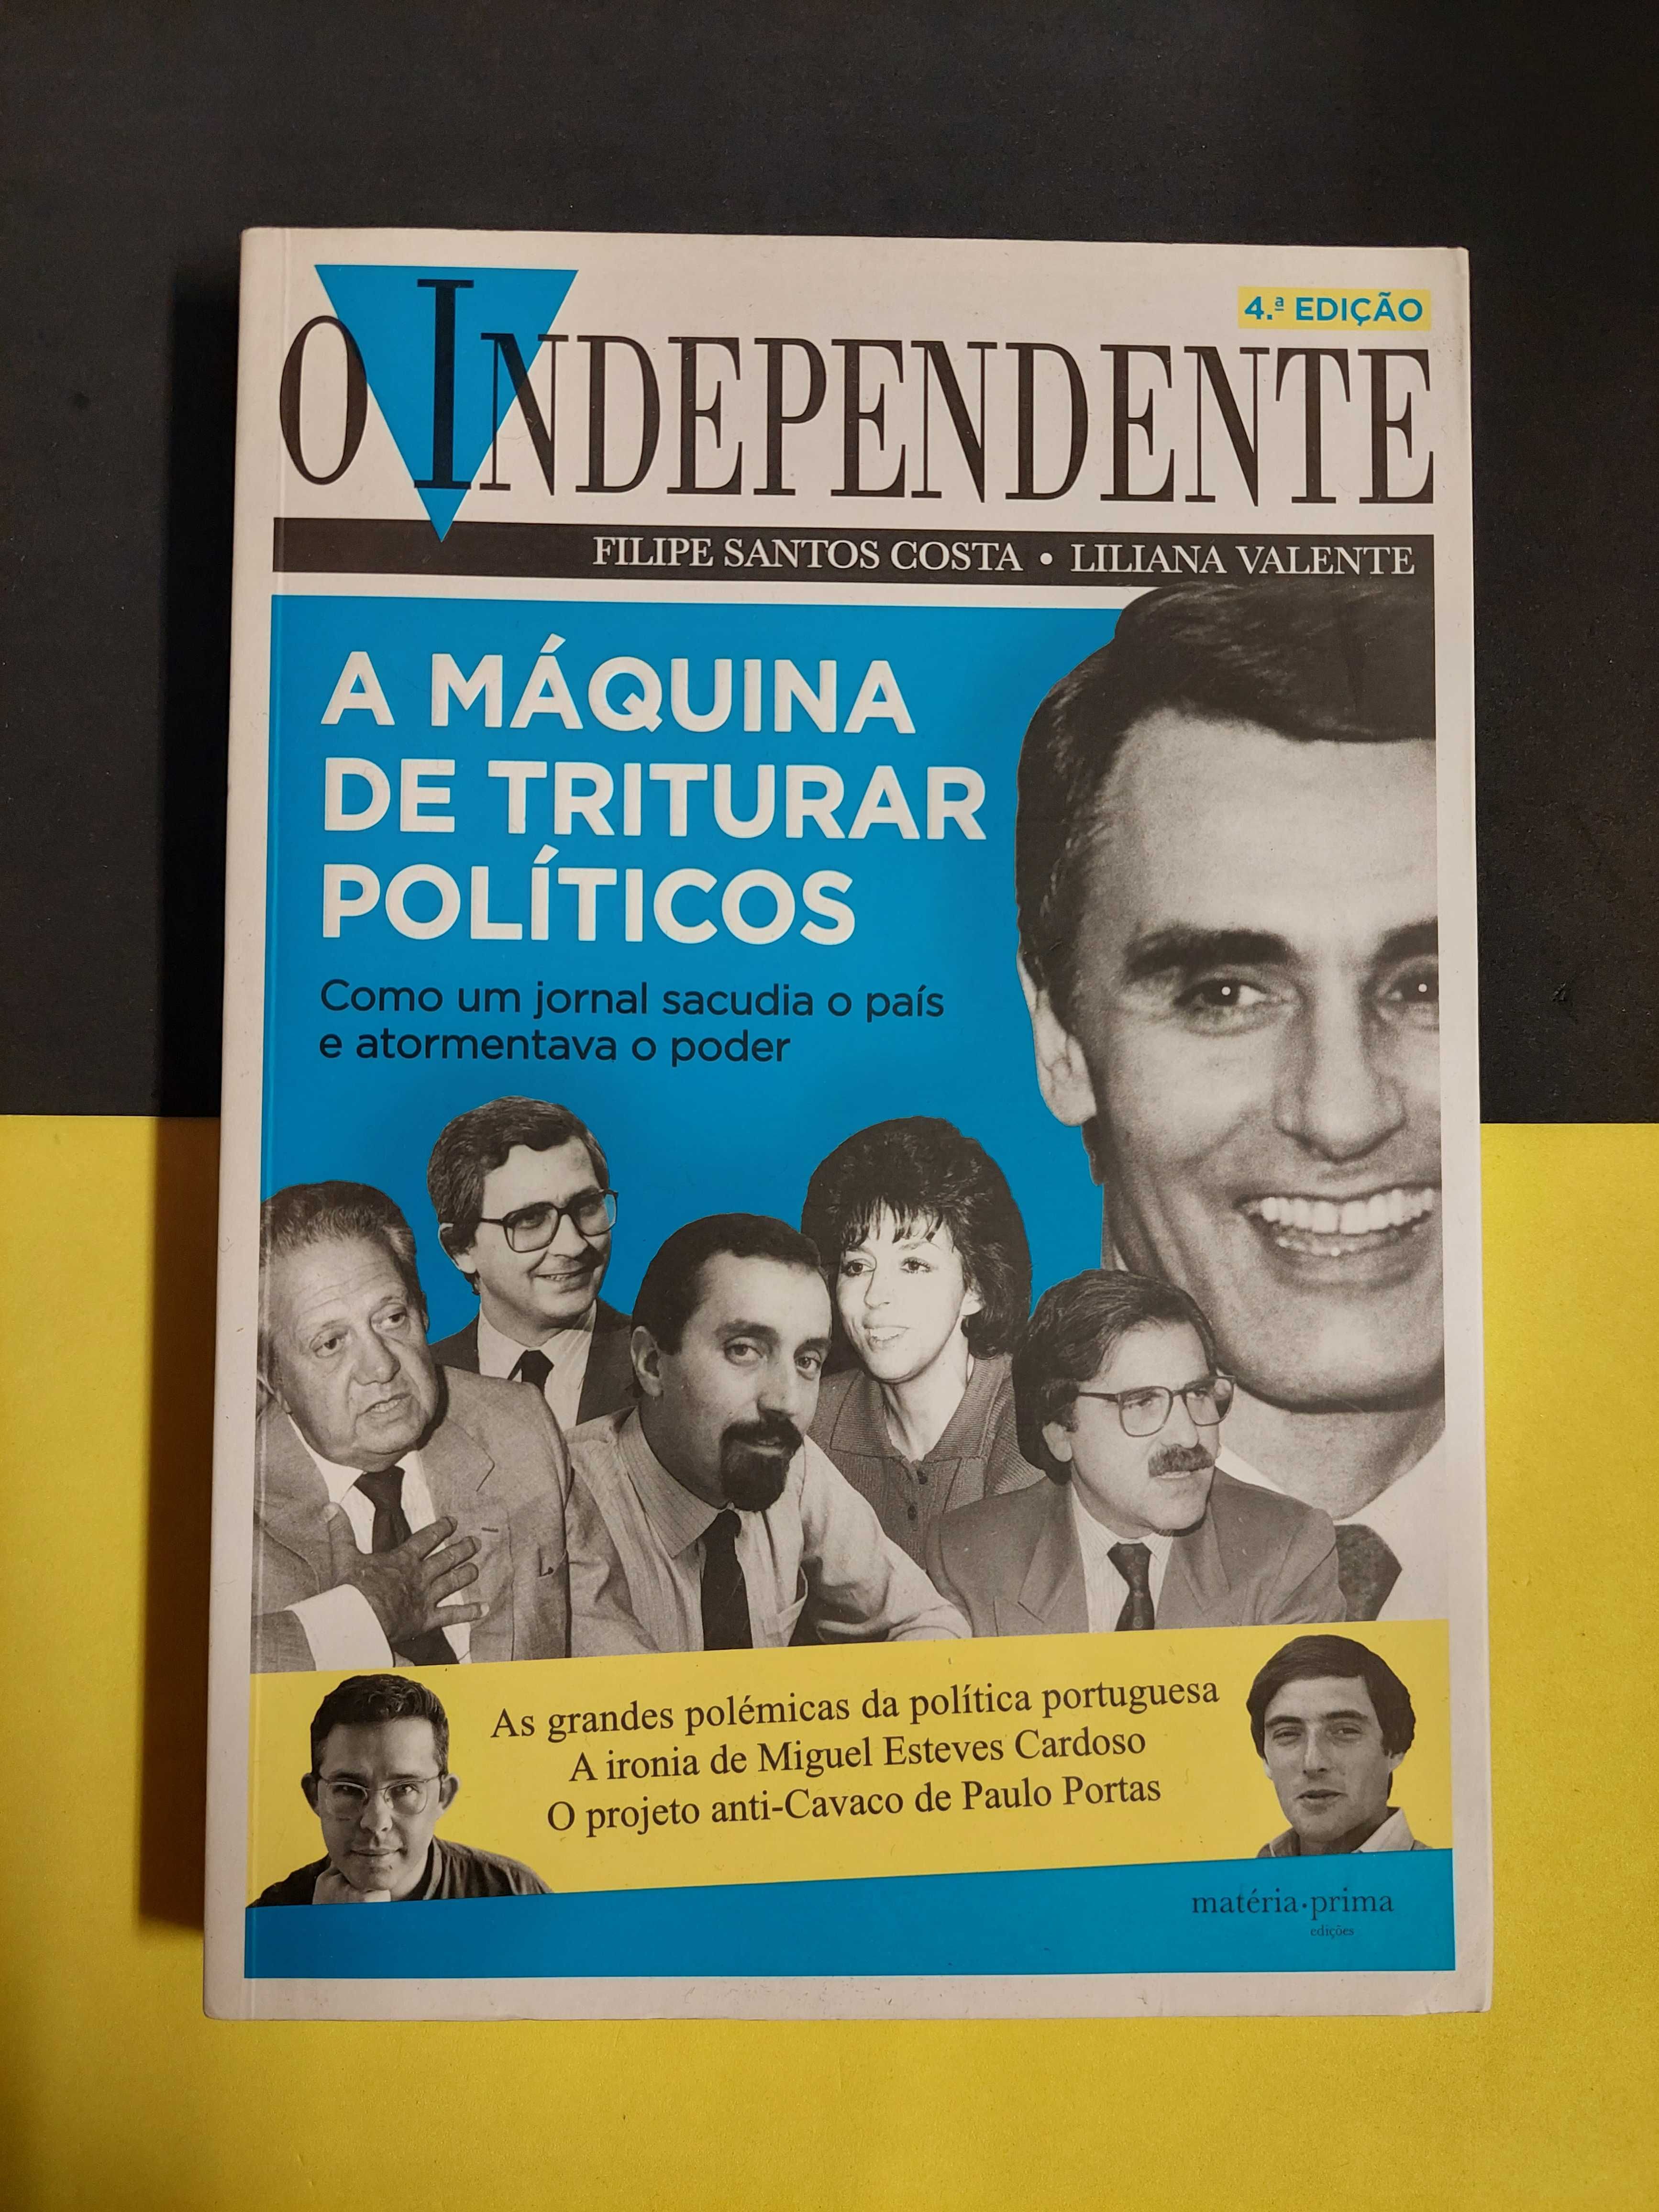 Filipe Santos Costa - O independente, 4ª edição